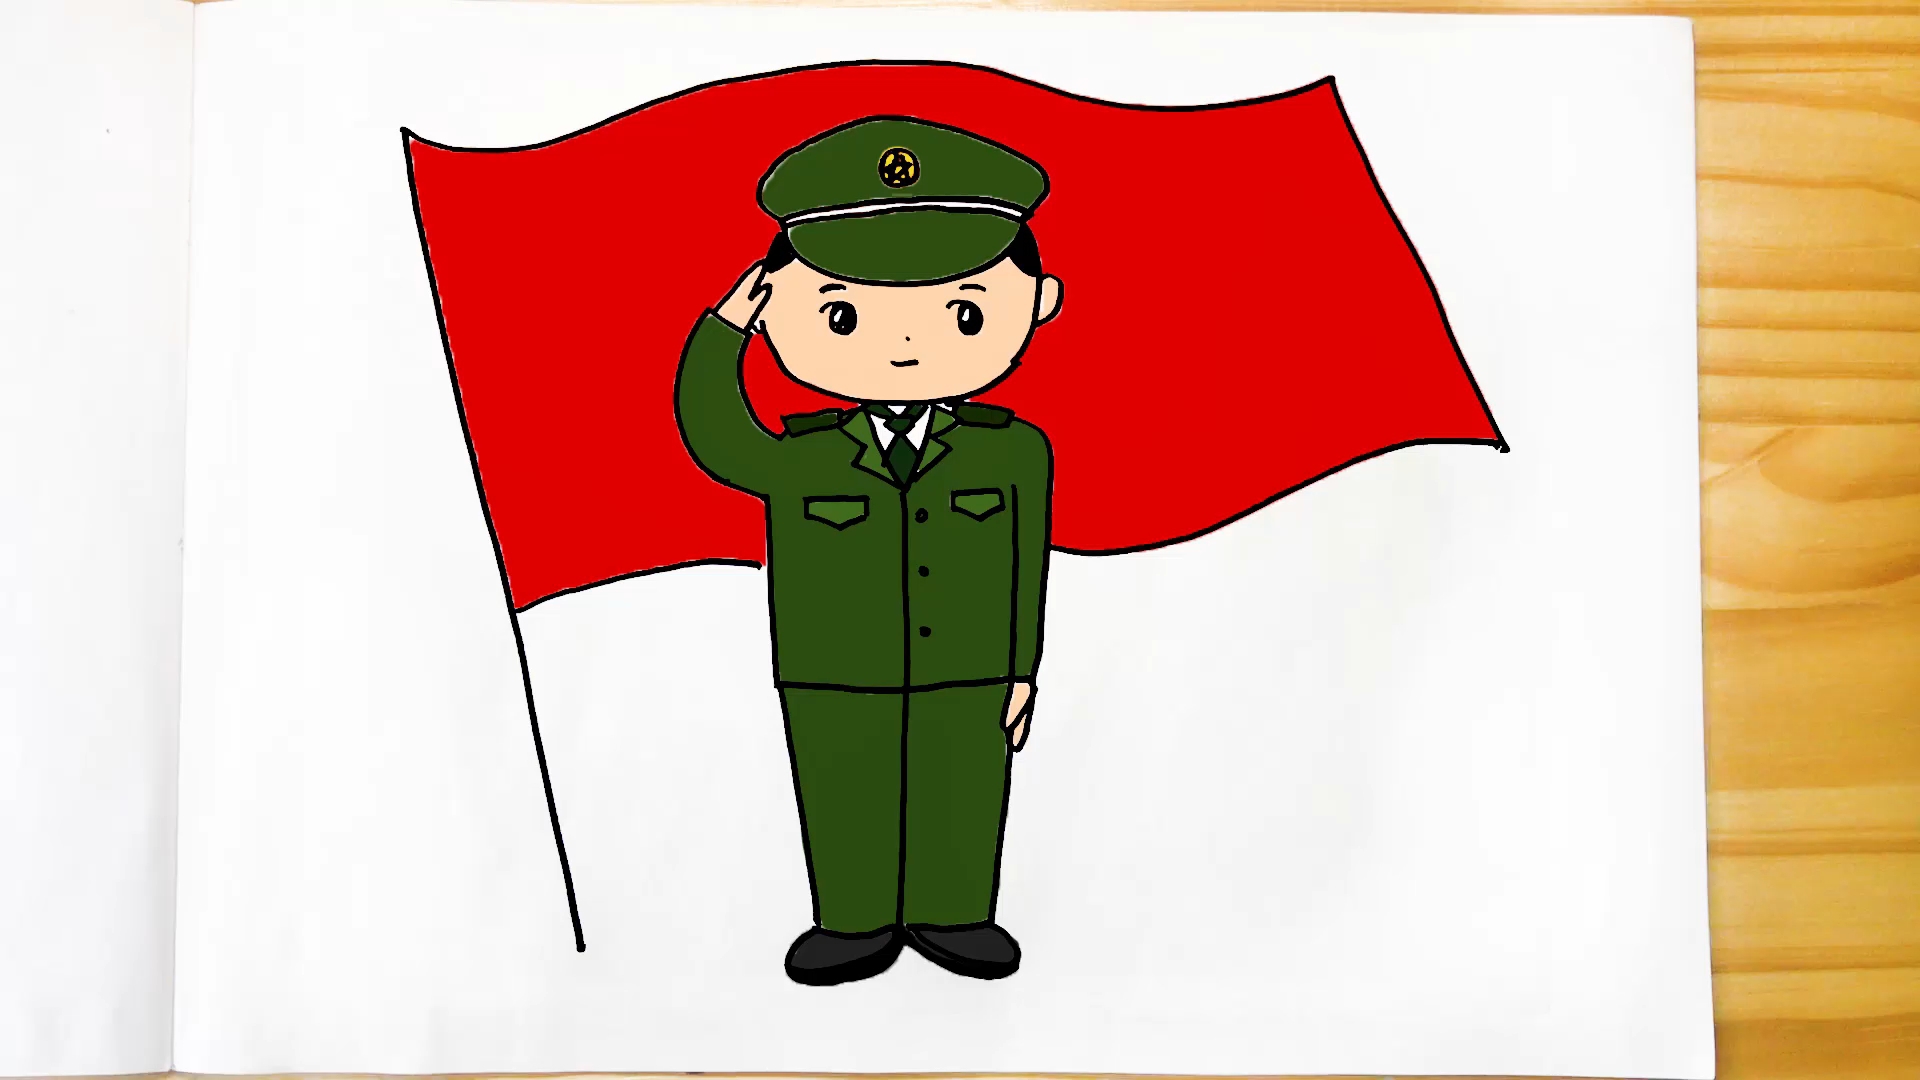 中国士兵怎么画 简单图片